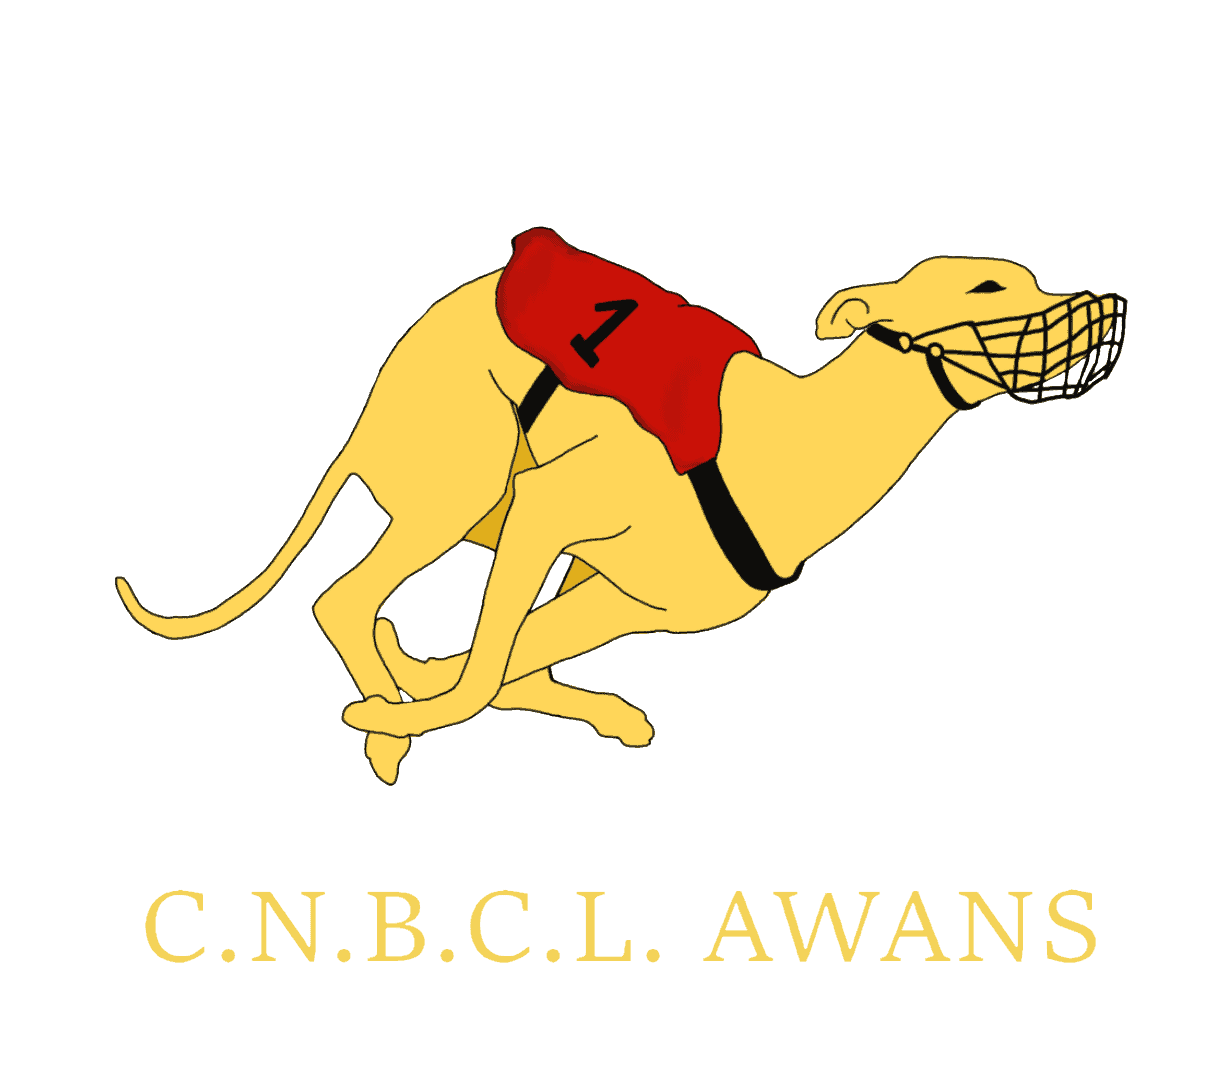 CNBCL Awans